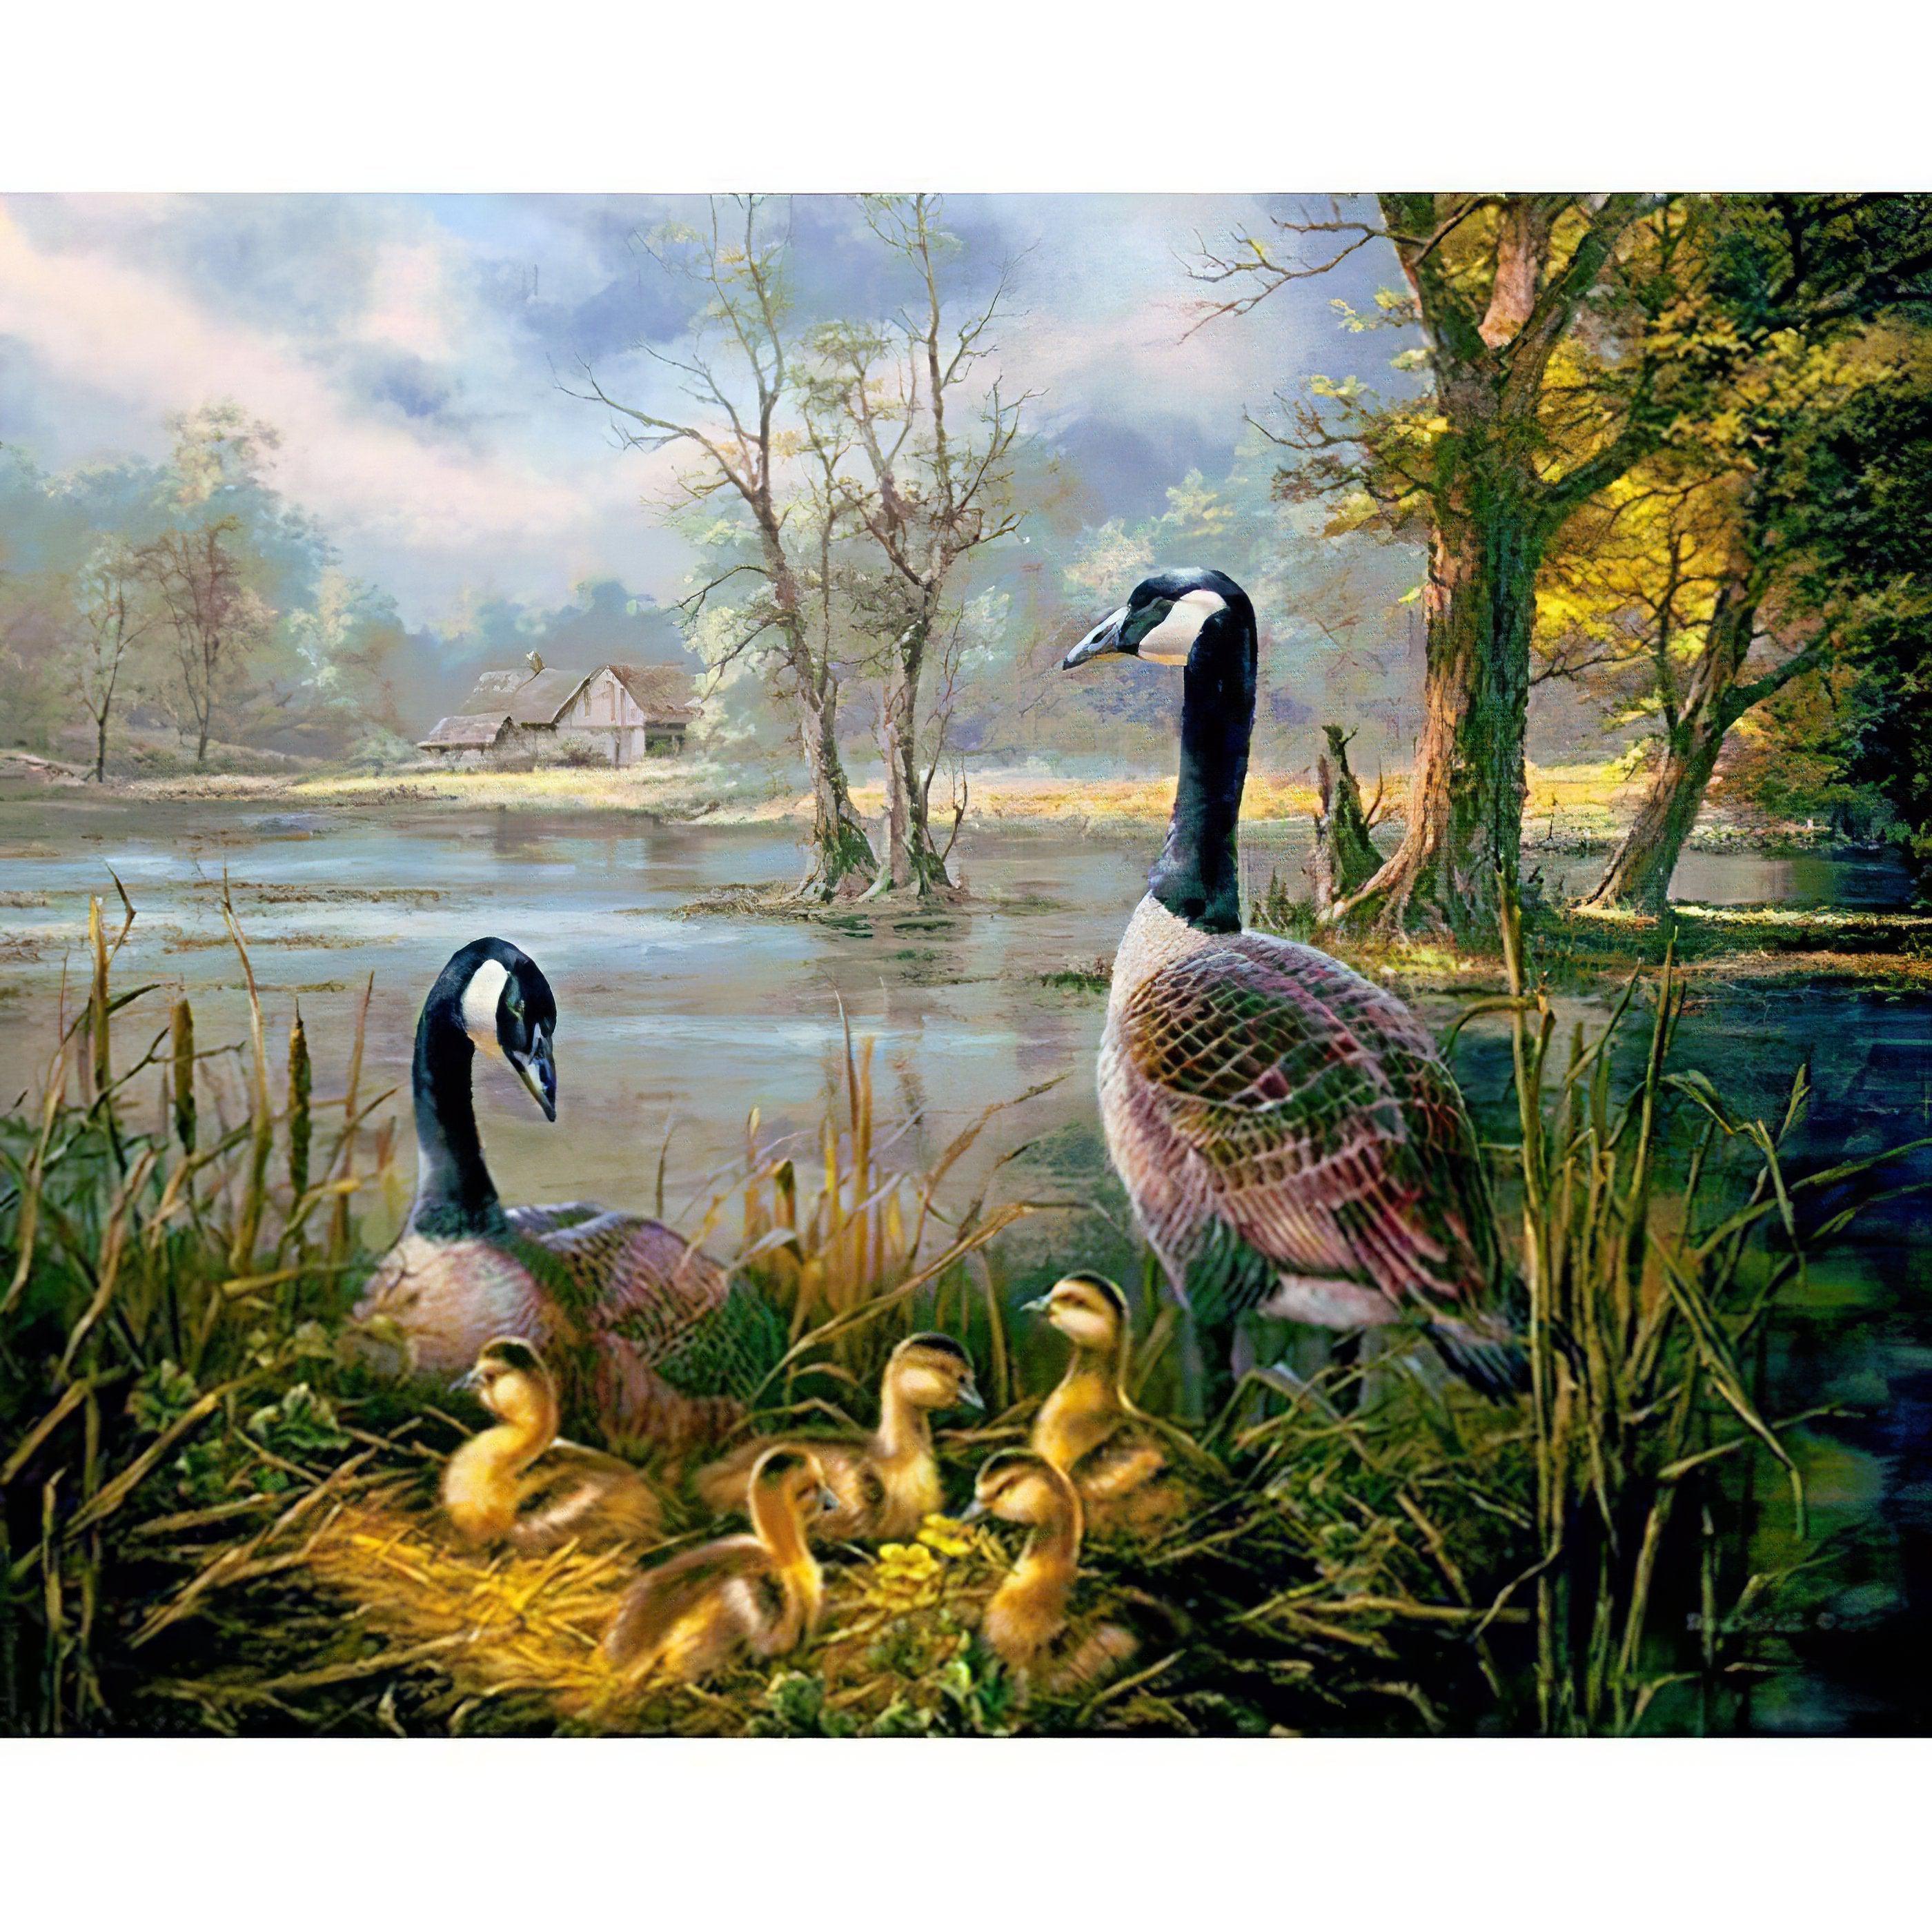 Enjoy charming Ducks in serene settings.Ducks - Diamondartlove